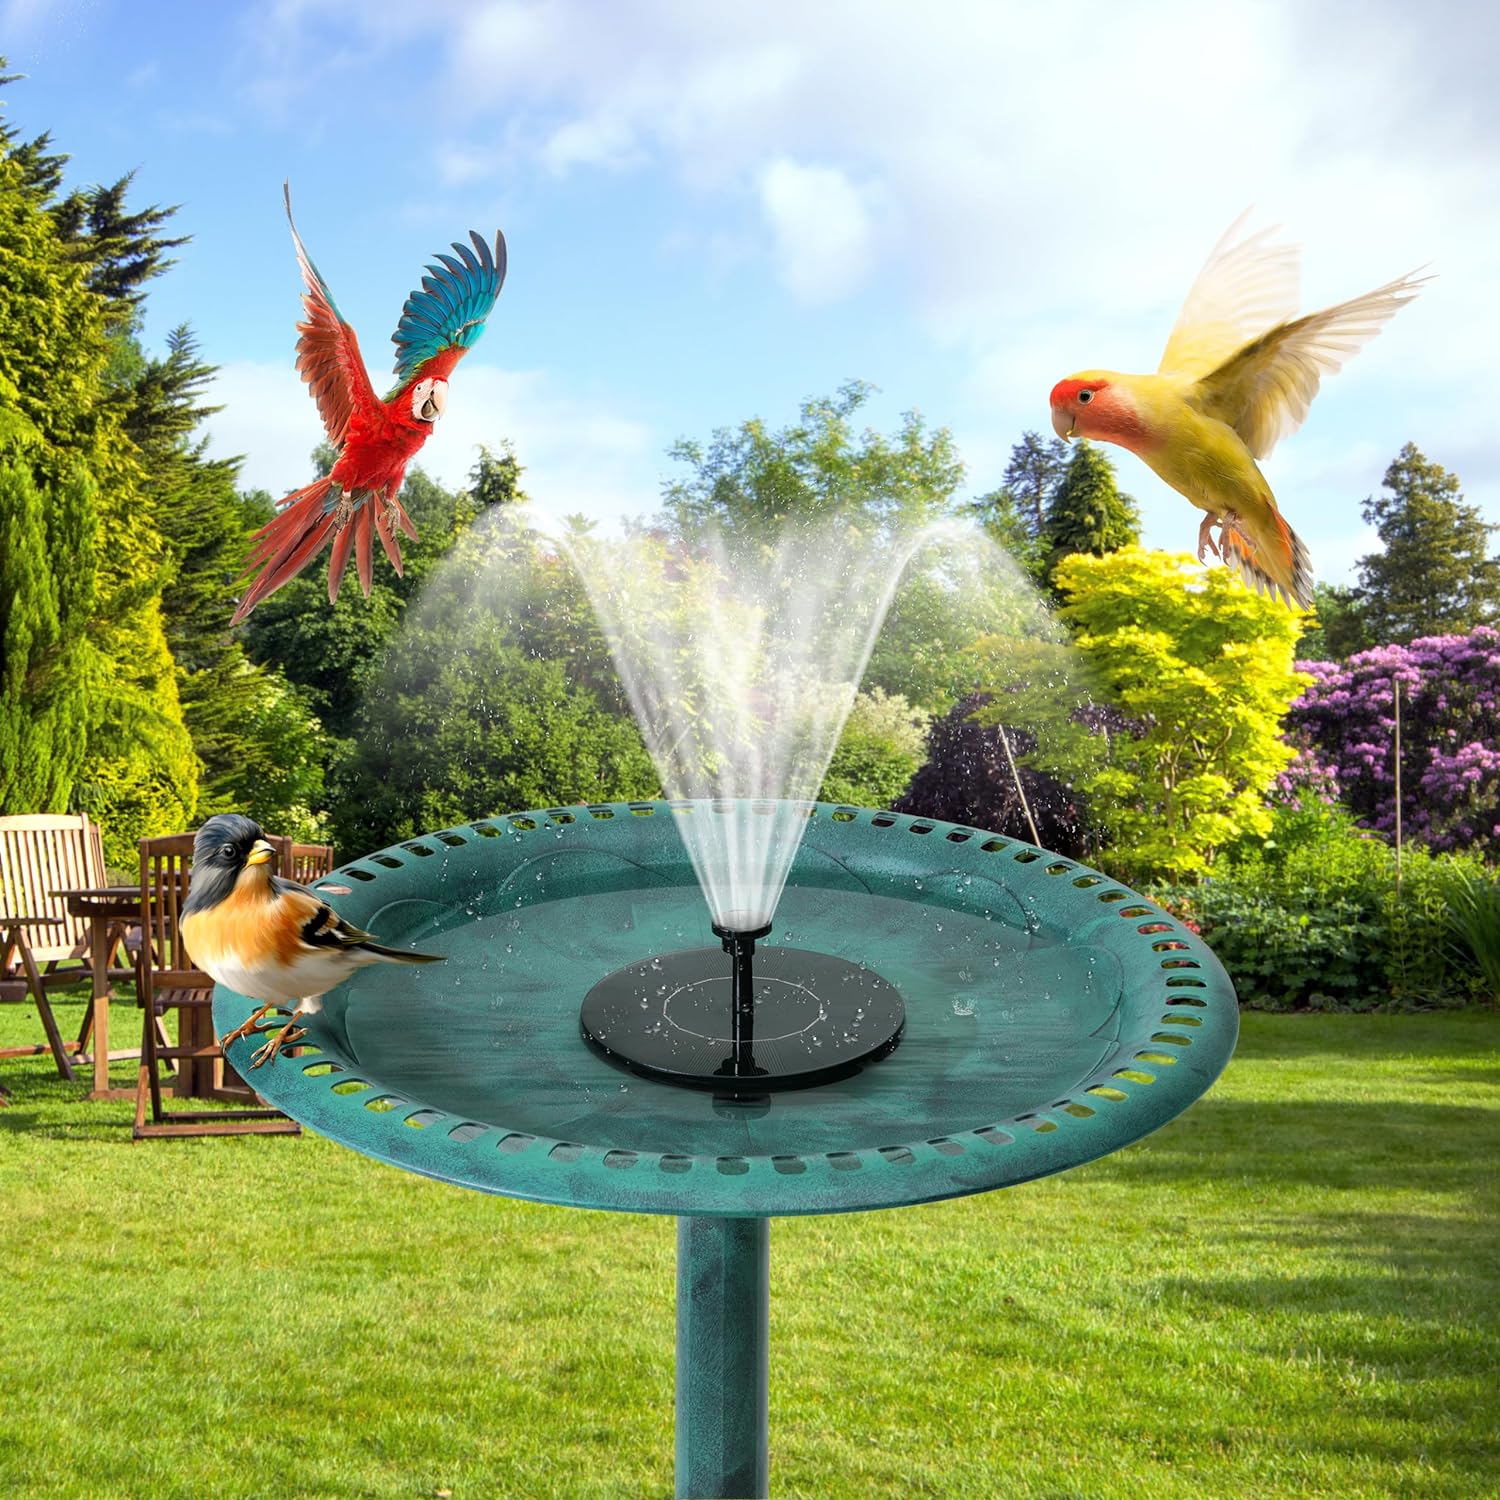 VECELO 28" Pedestal Outdoor Bird Bath with Solar Powered Fountain